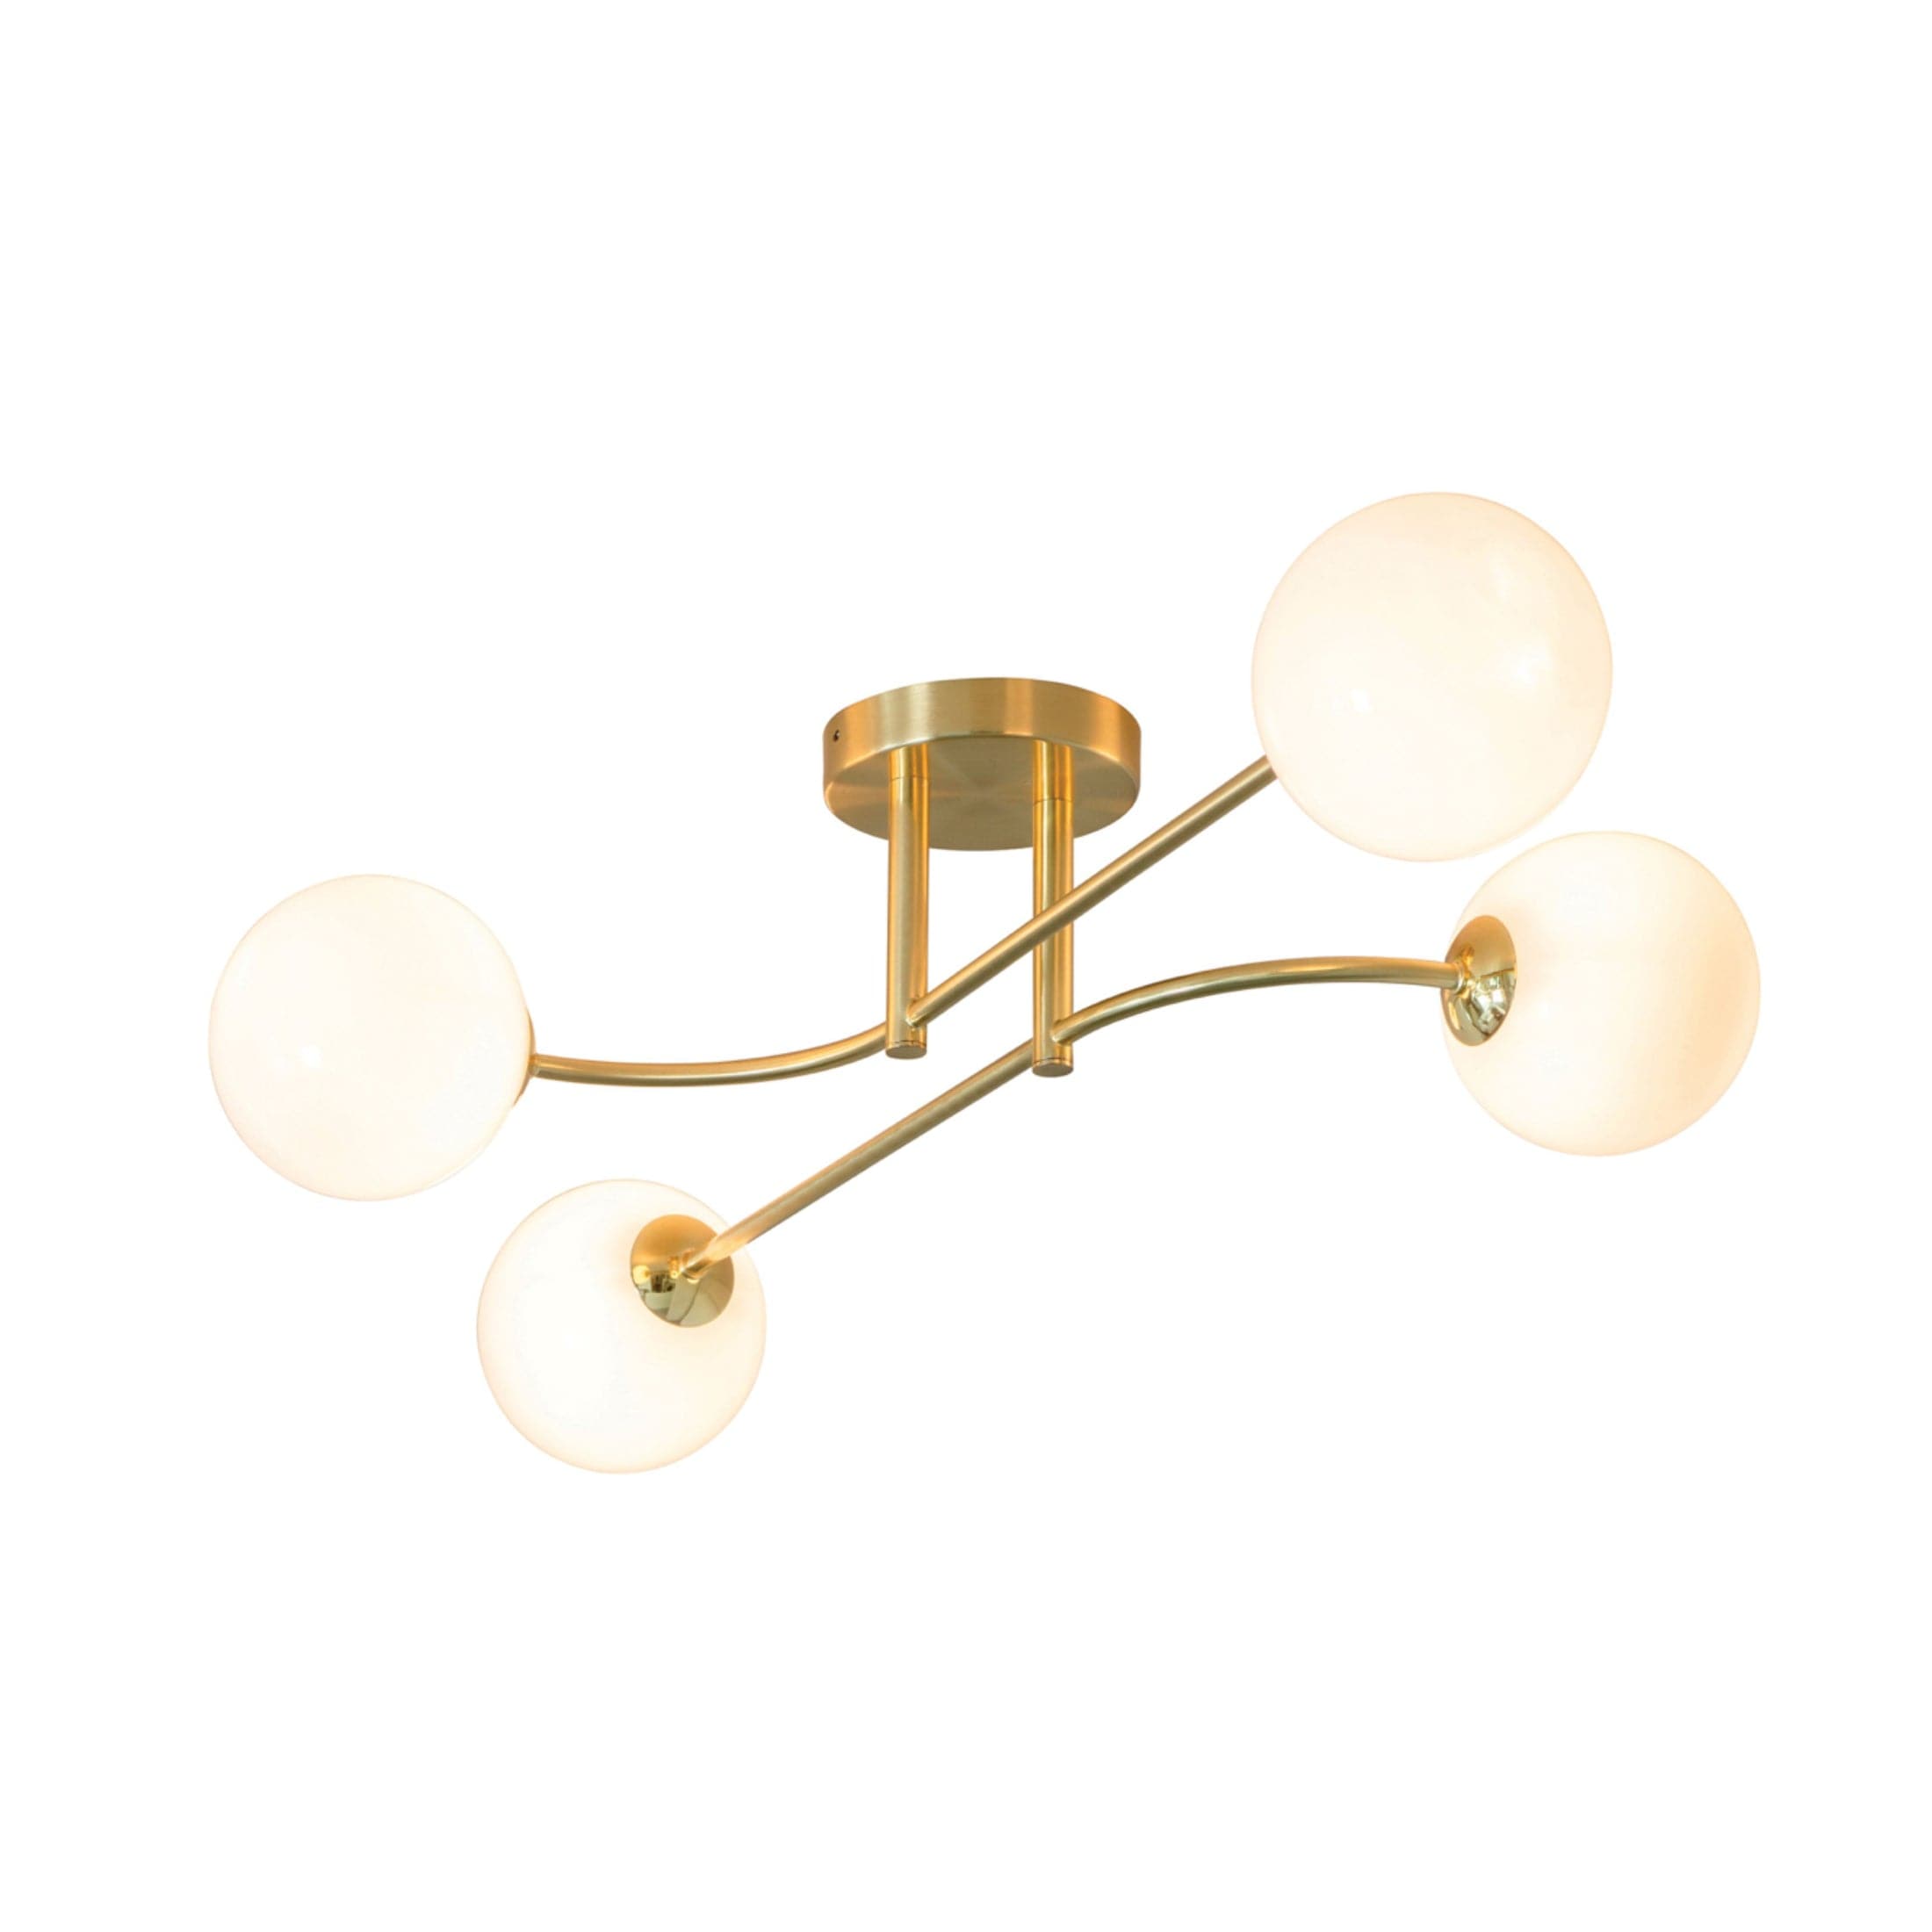 Brushed Brass Art Deco Inspired Four Globe Ceiling Light 2